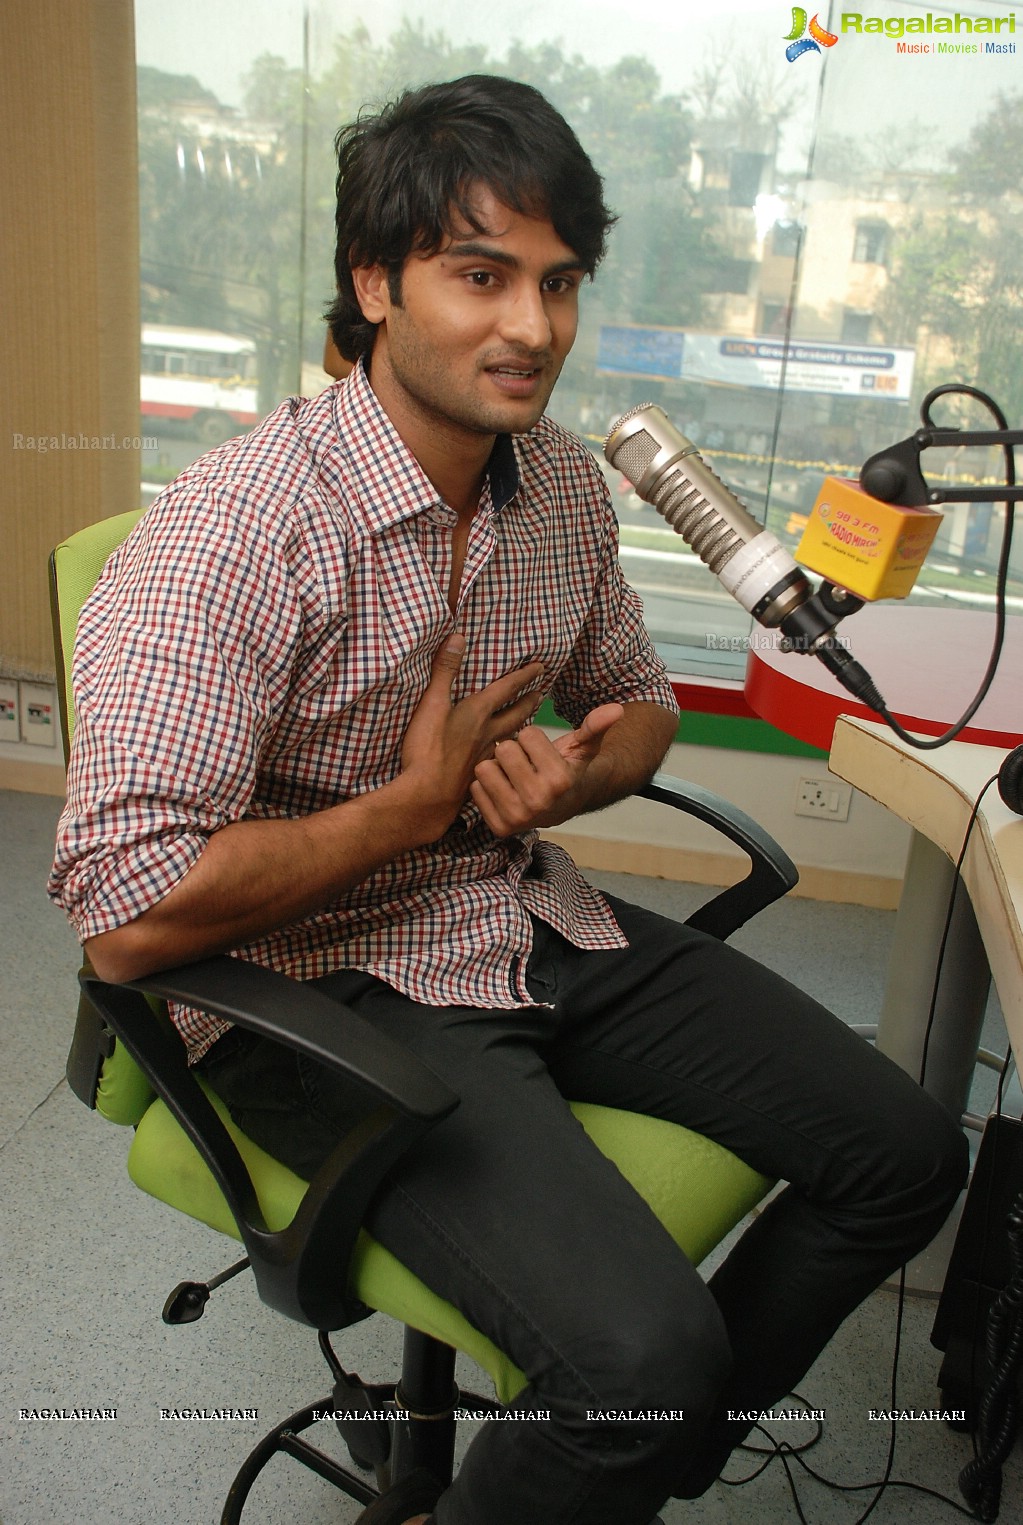 Naga Sudhir Babu at Radio Mirchi